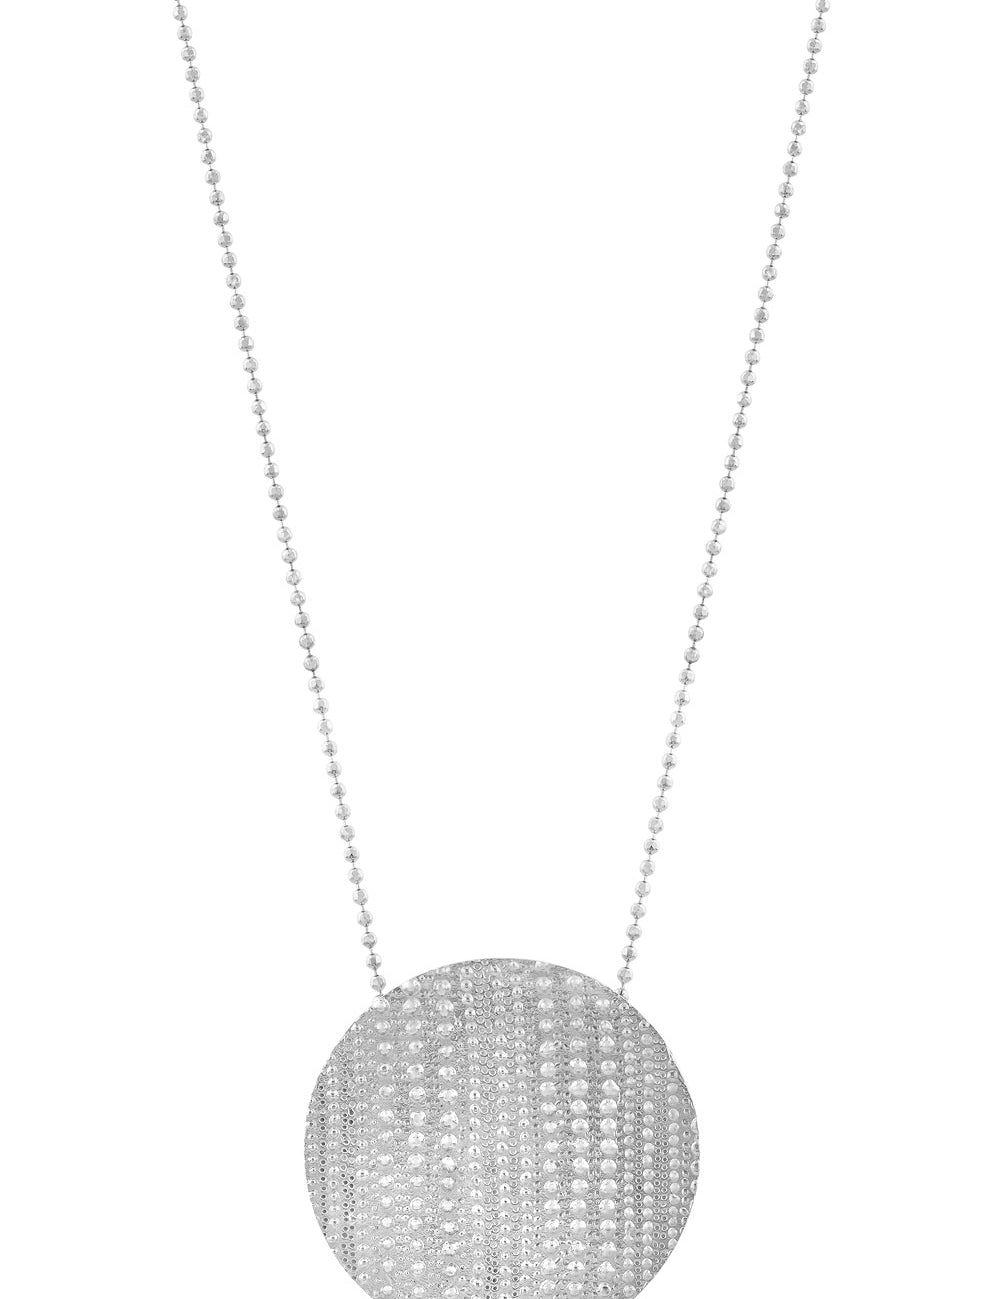 Necklace Moon - Sophie Simone Designs